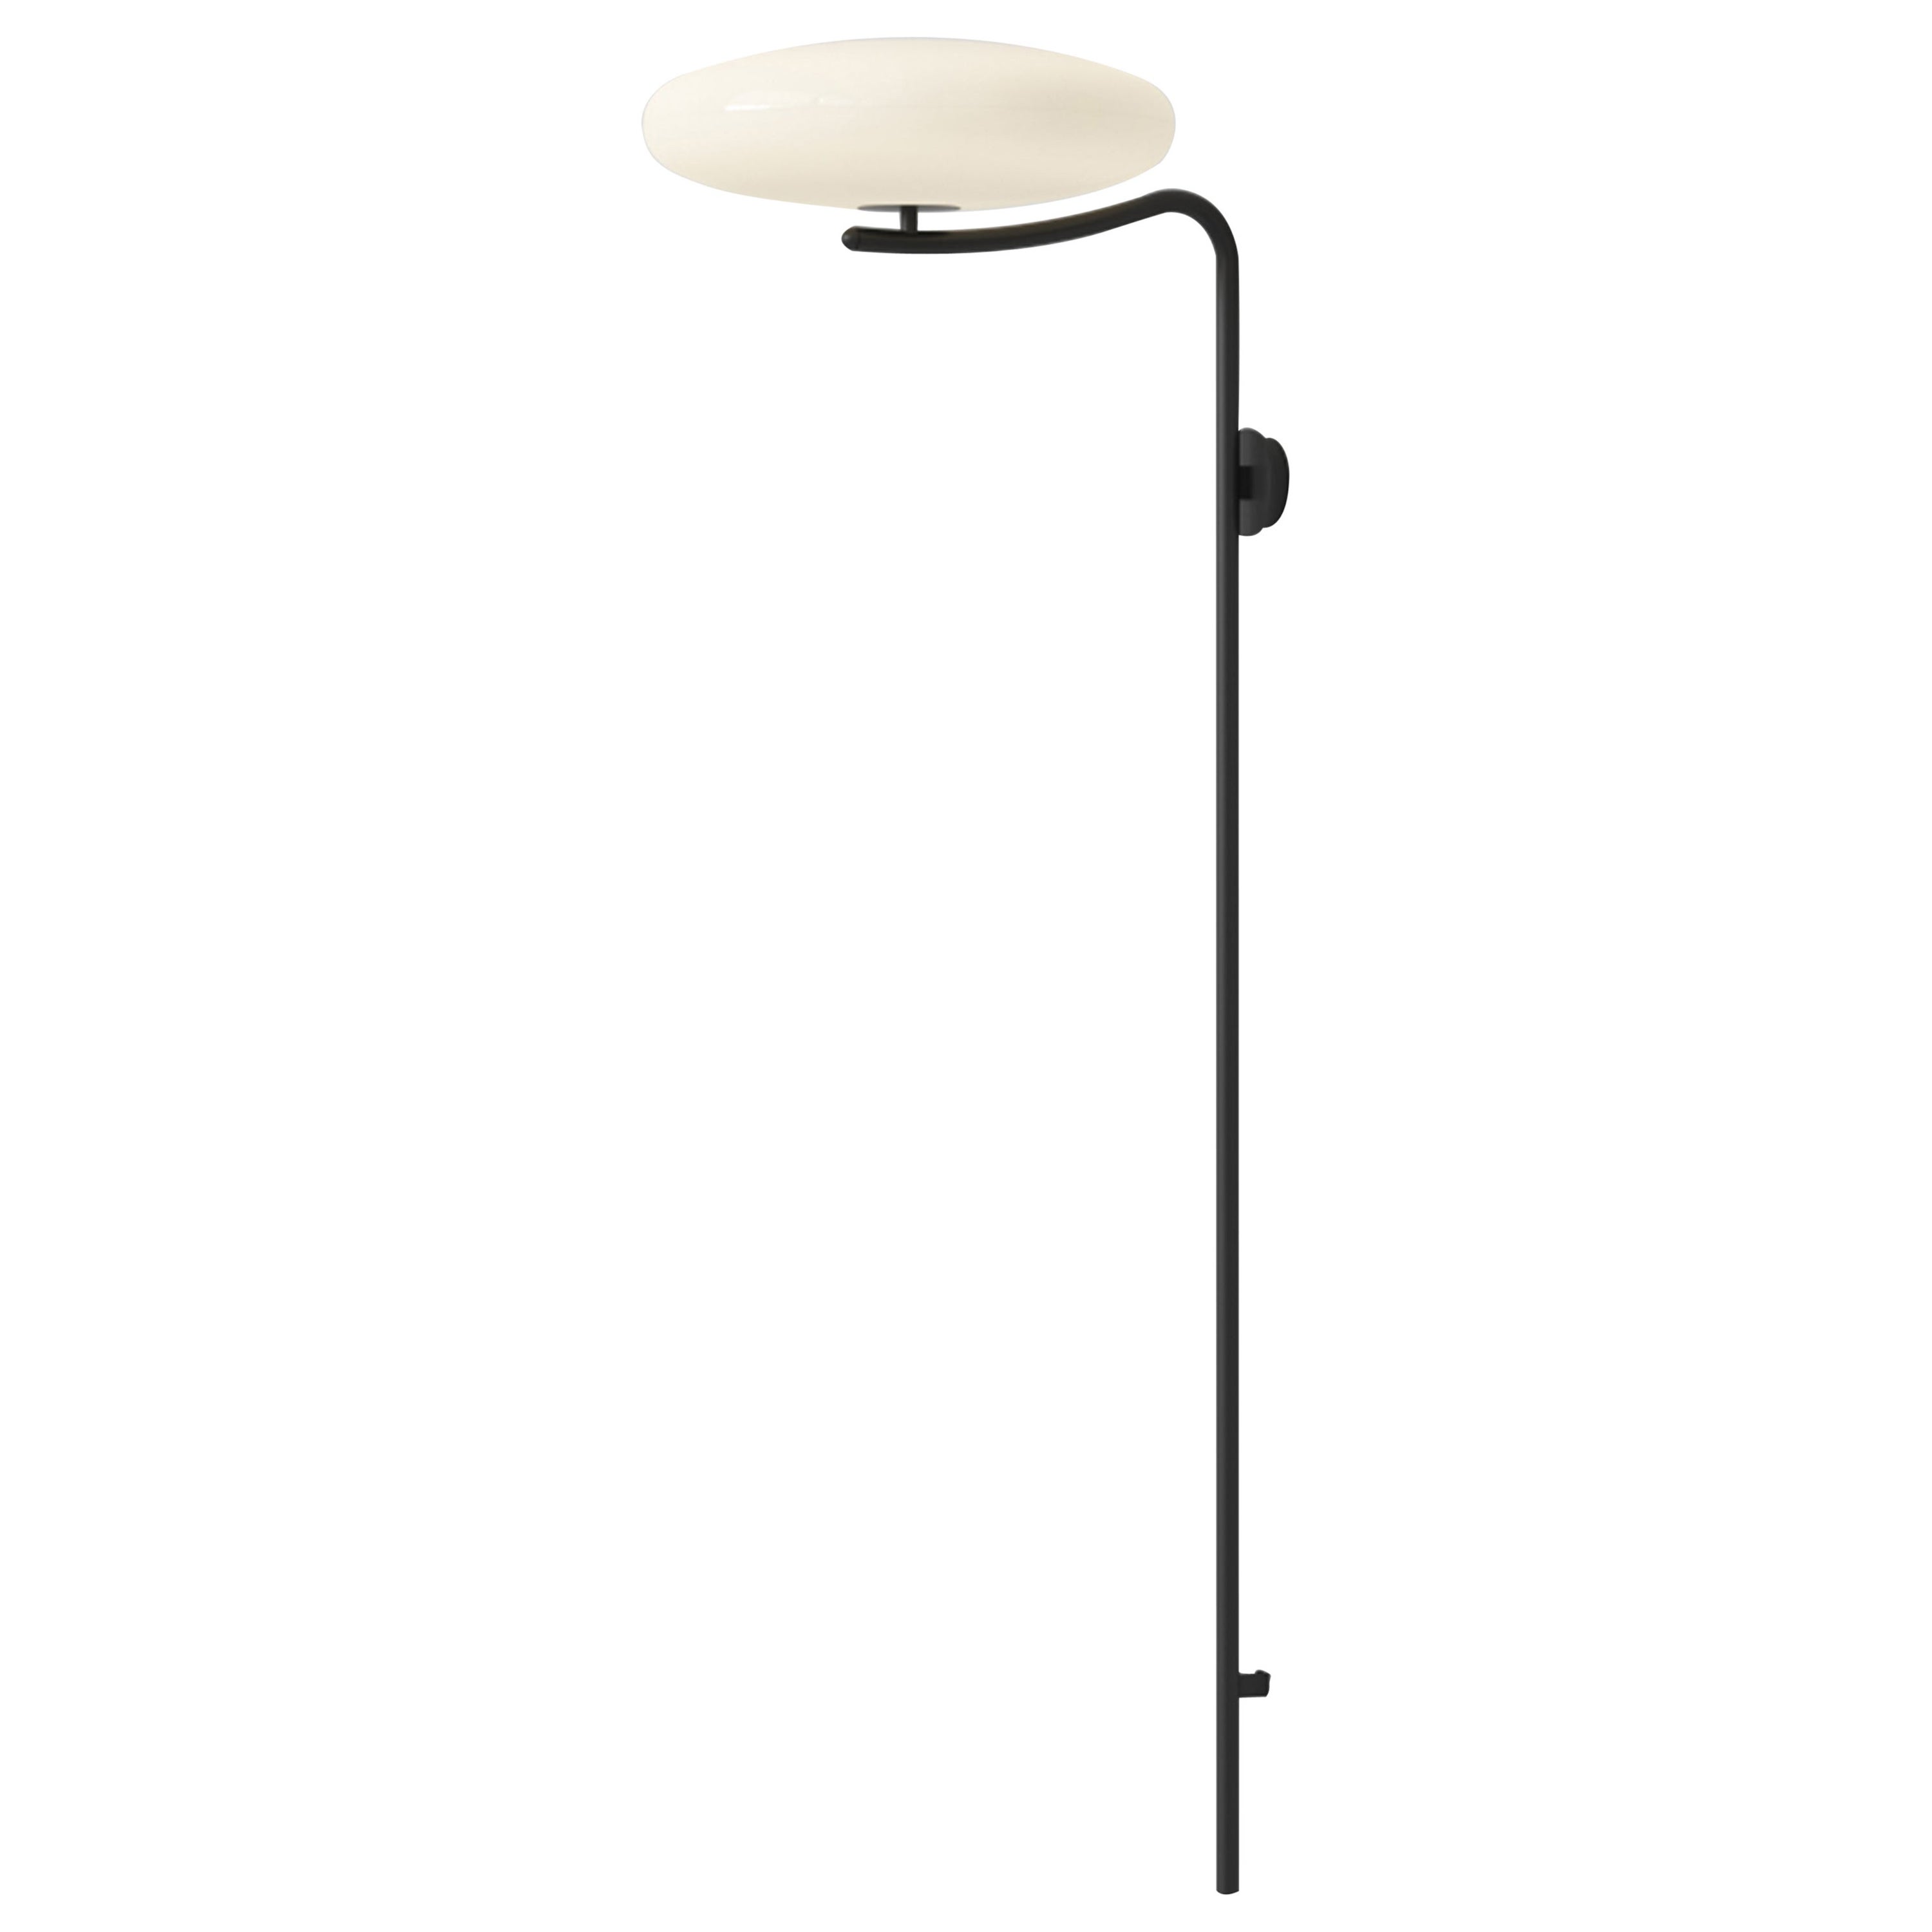 Gino Sarfatti Wall Lamp Model 2065 White Diffuser, Black Hardware